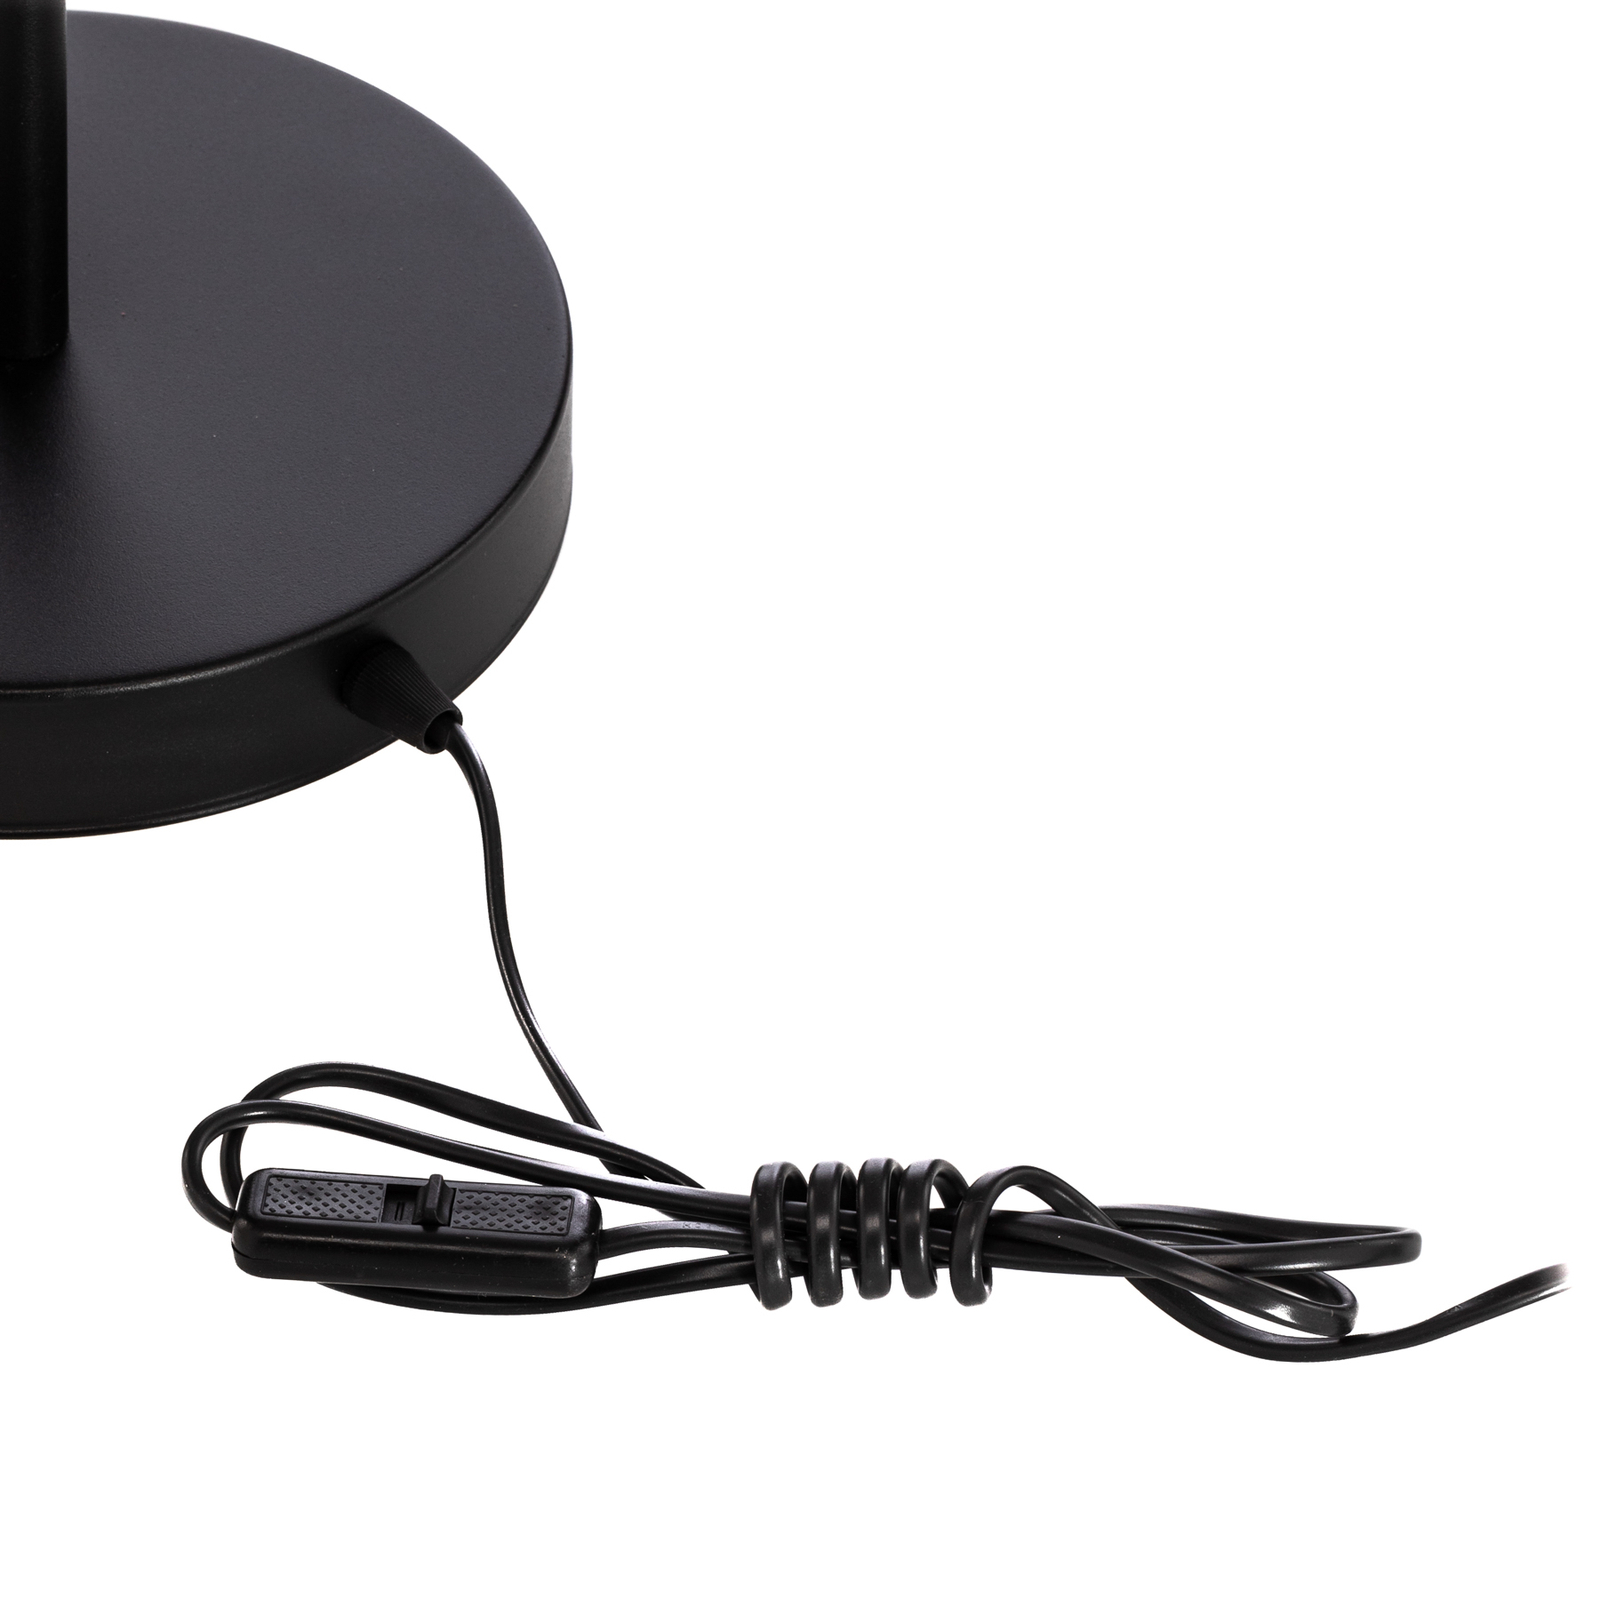 Rossi galda lampa, divgaismas, melna/grafīta krāsā